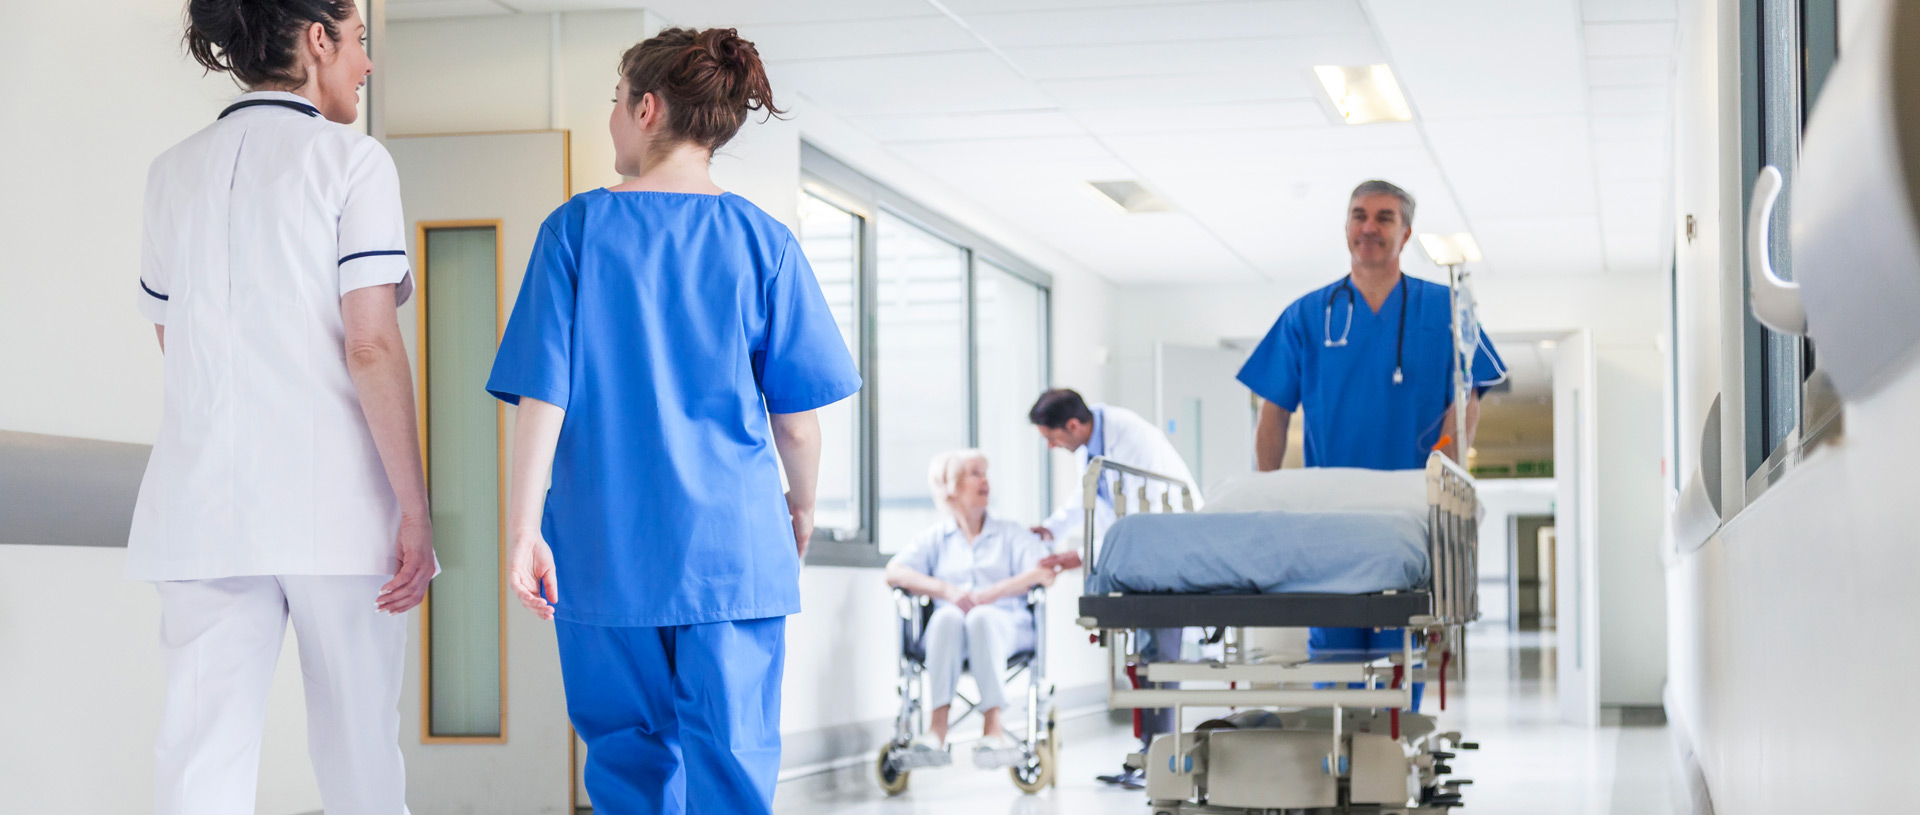 infermiere con camice blu spinge lettino vuoto in corsia di ospedale